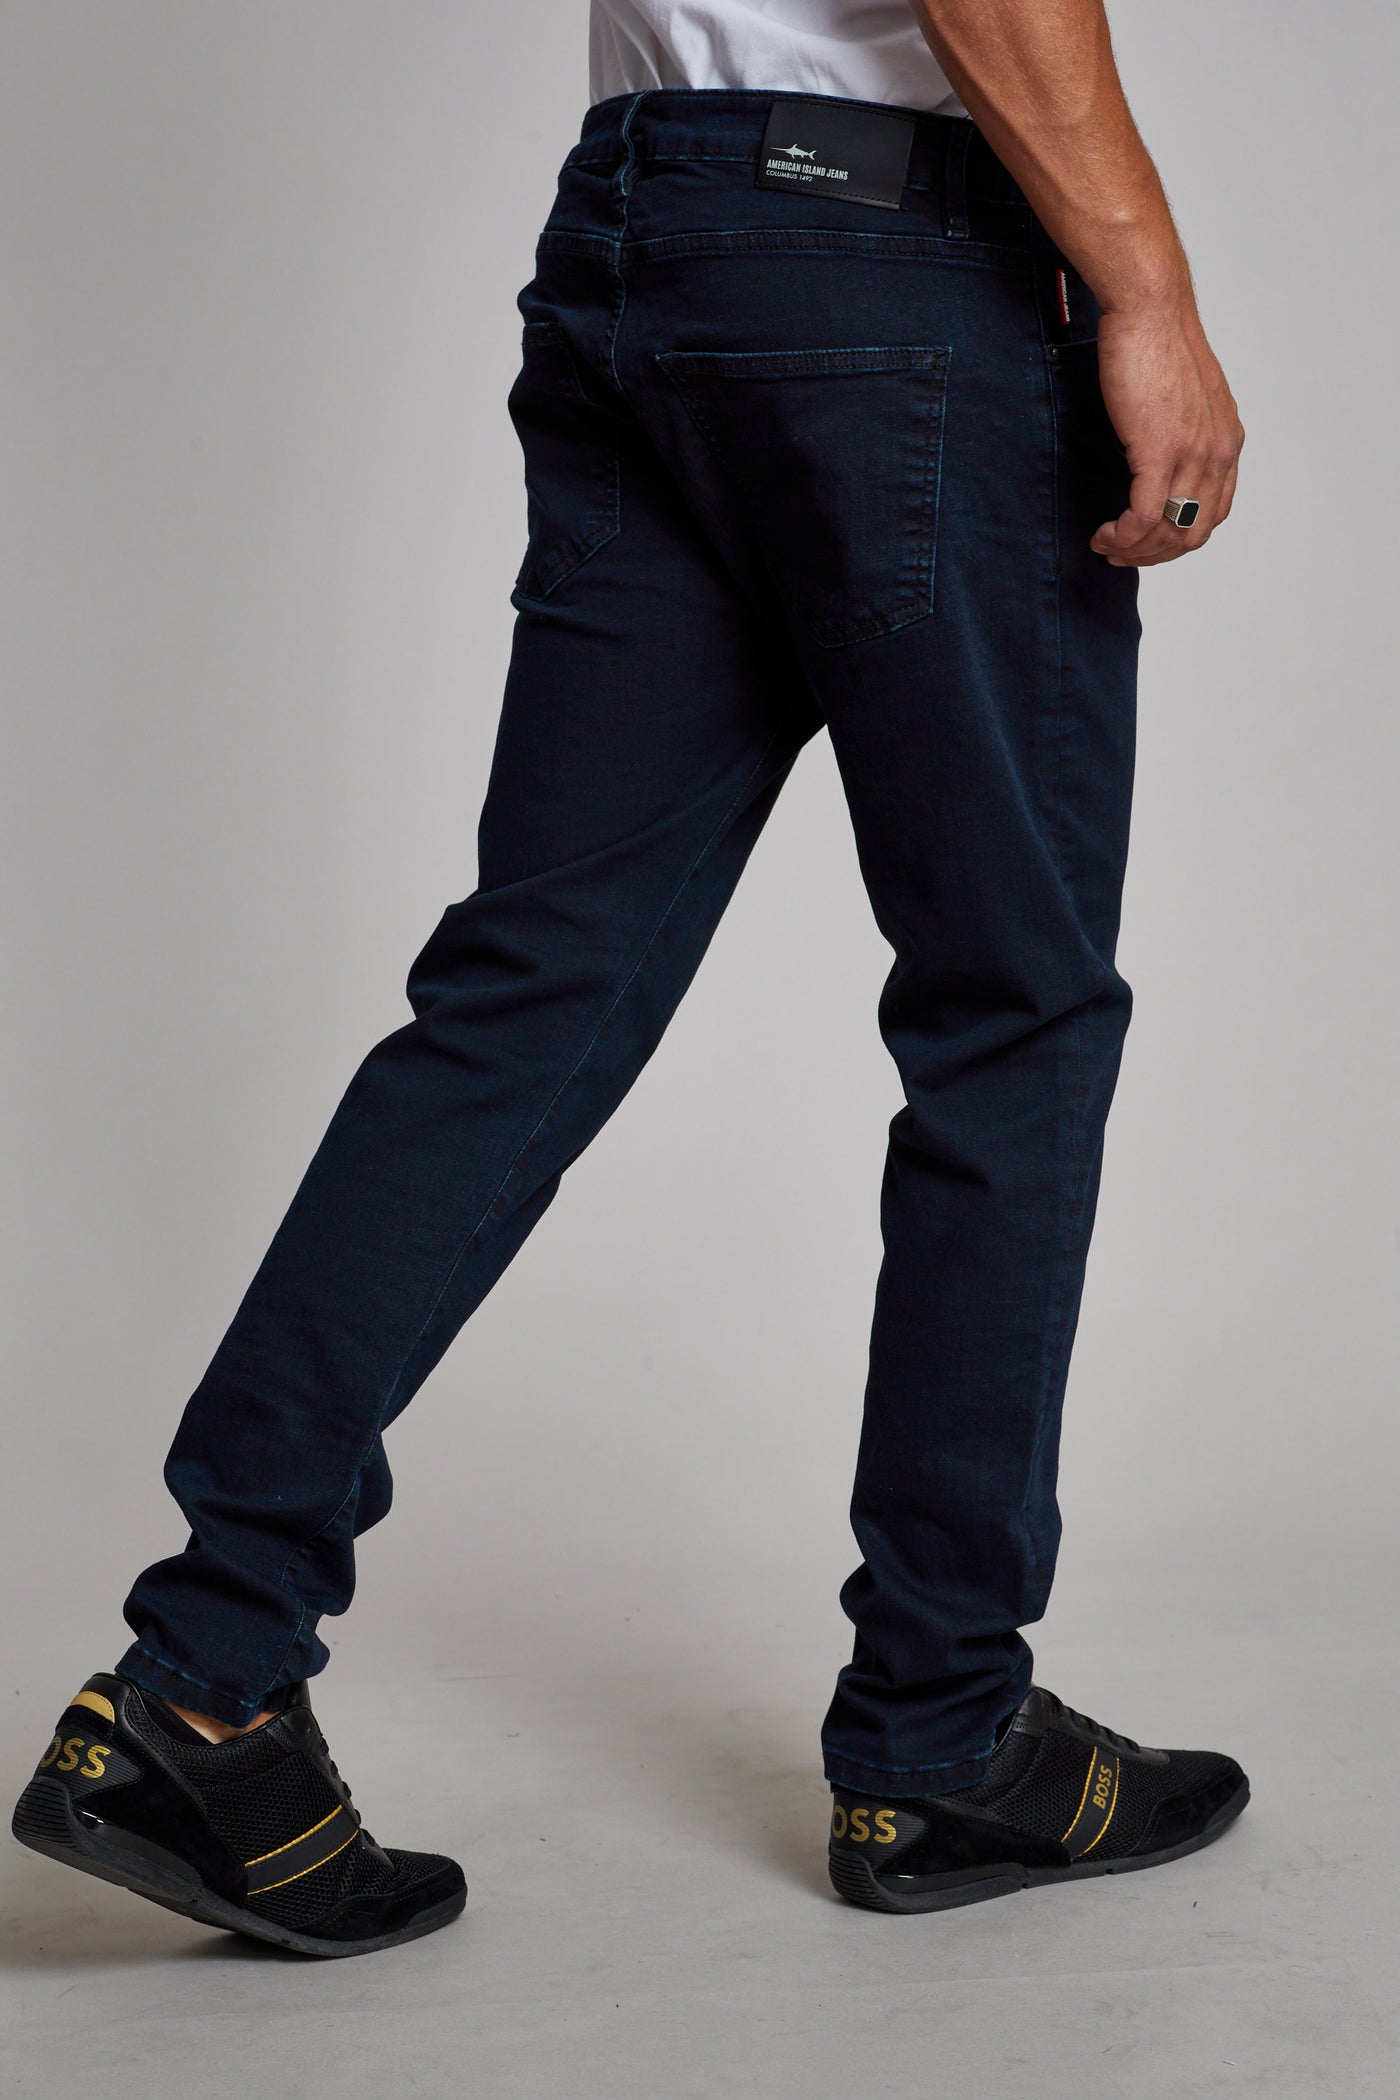 מכנס ג'ינס סלים TU בצבע כחול 2